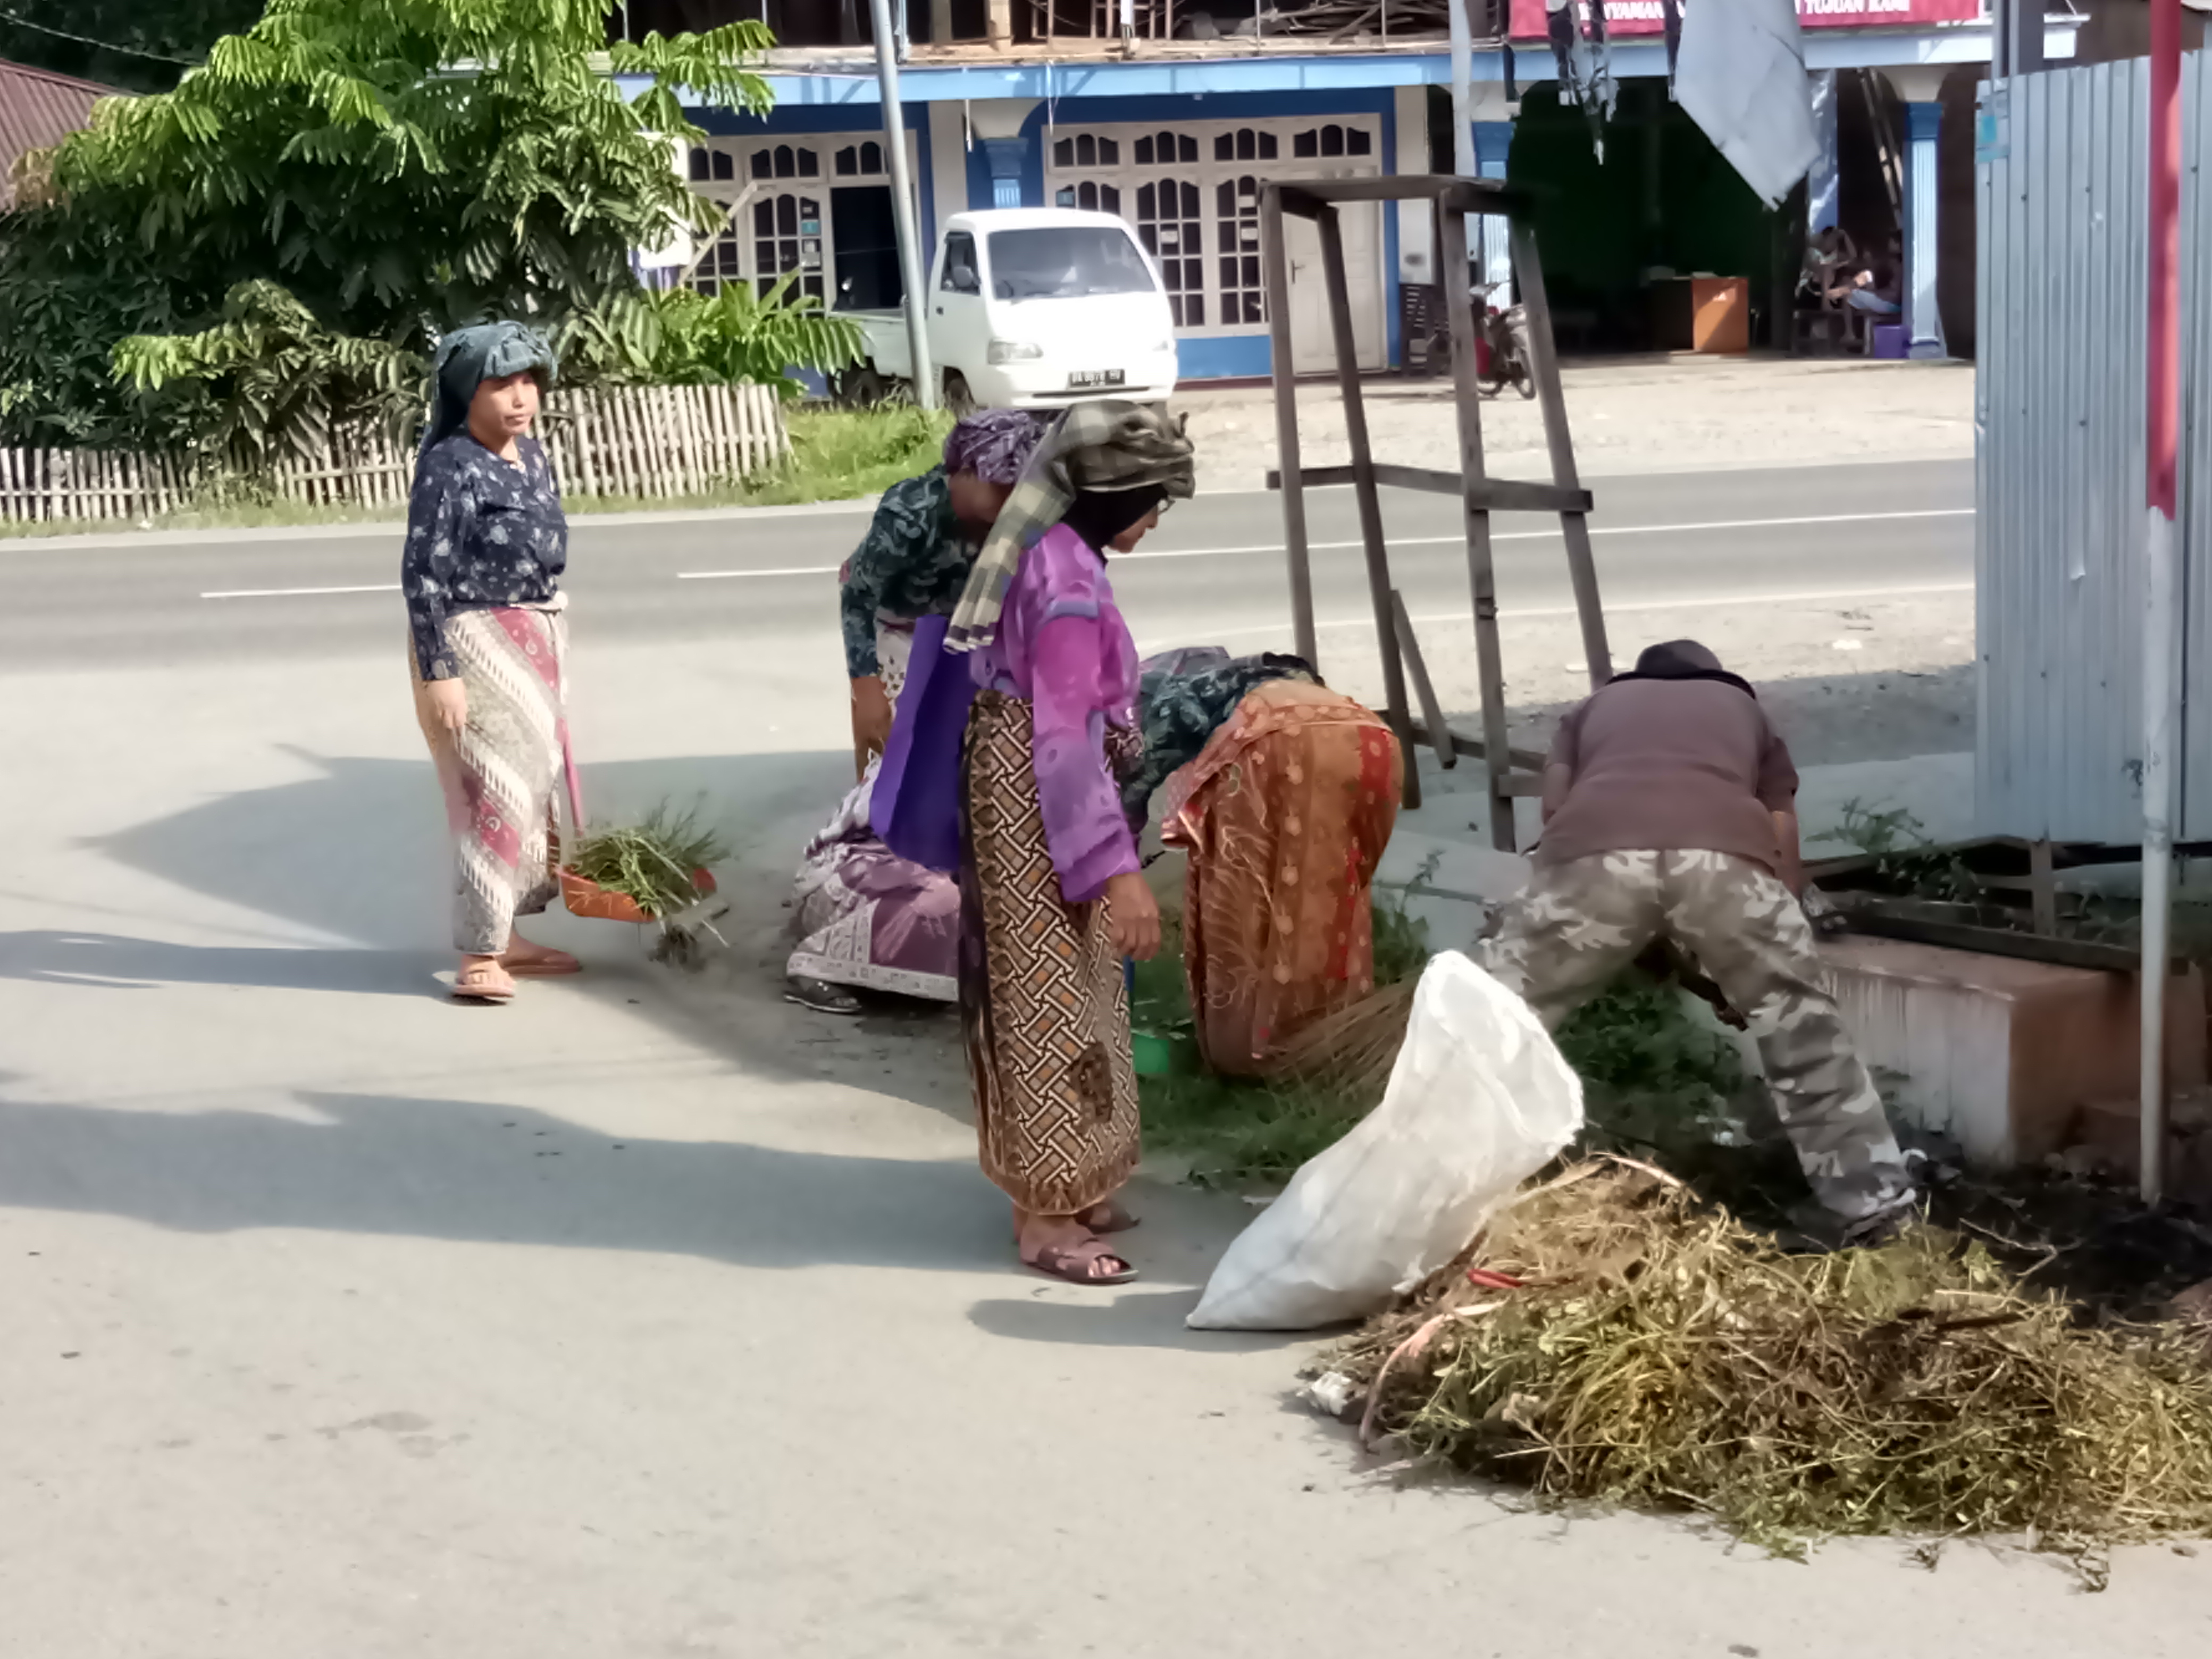 Basikameh, Tradisi Gotong Royong Emak-Emak di Kota Solok